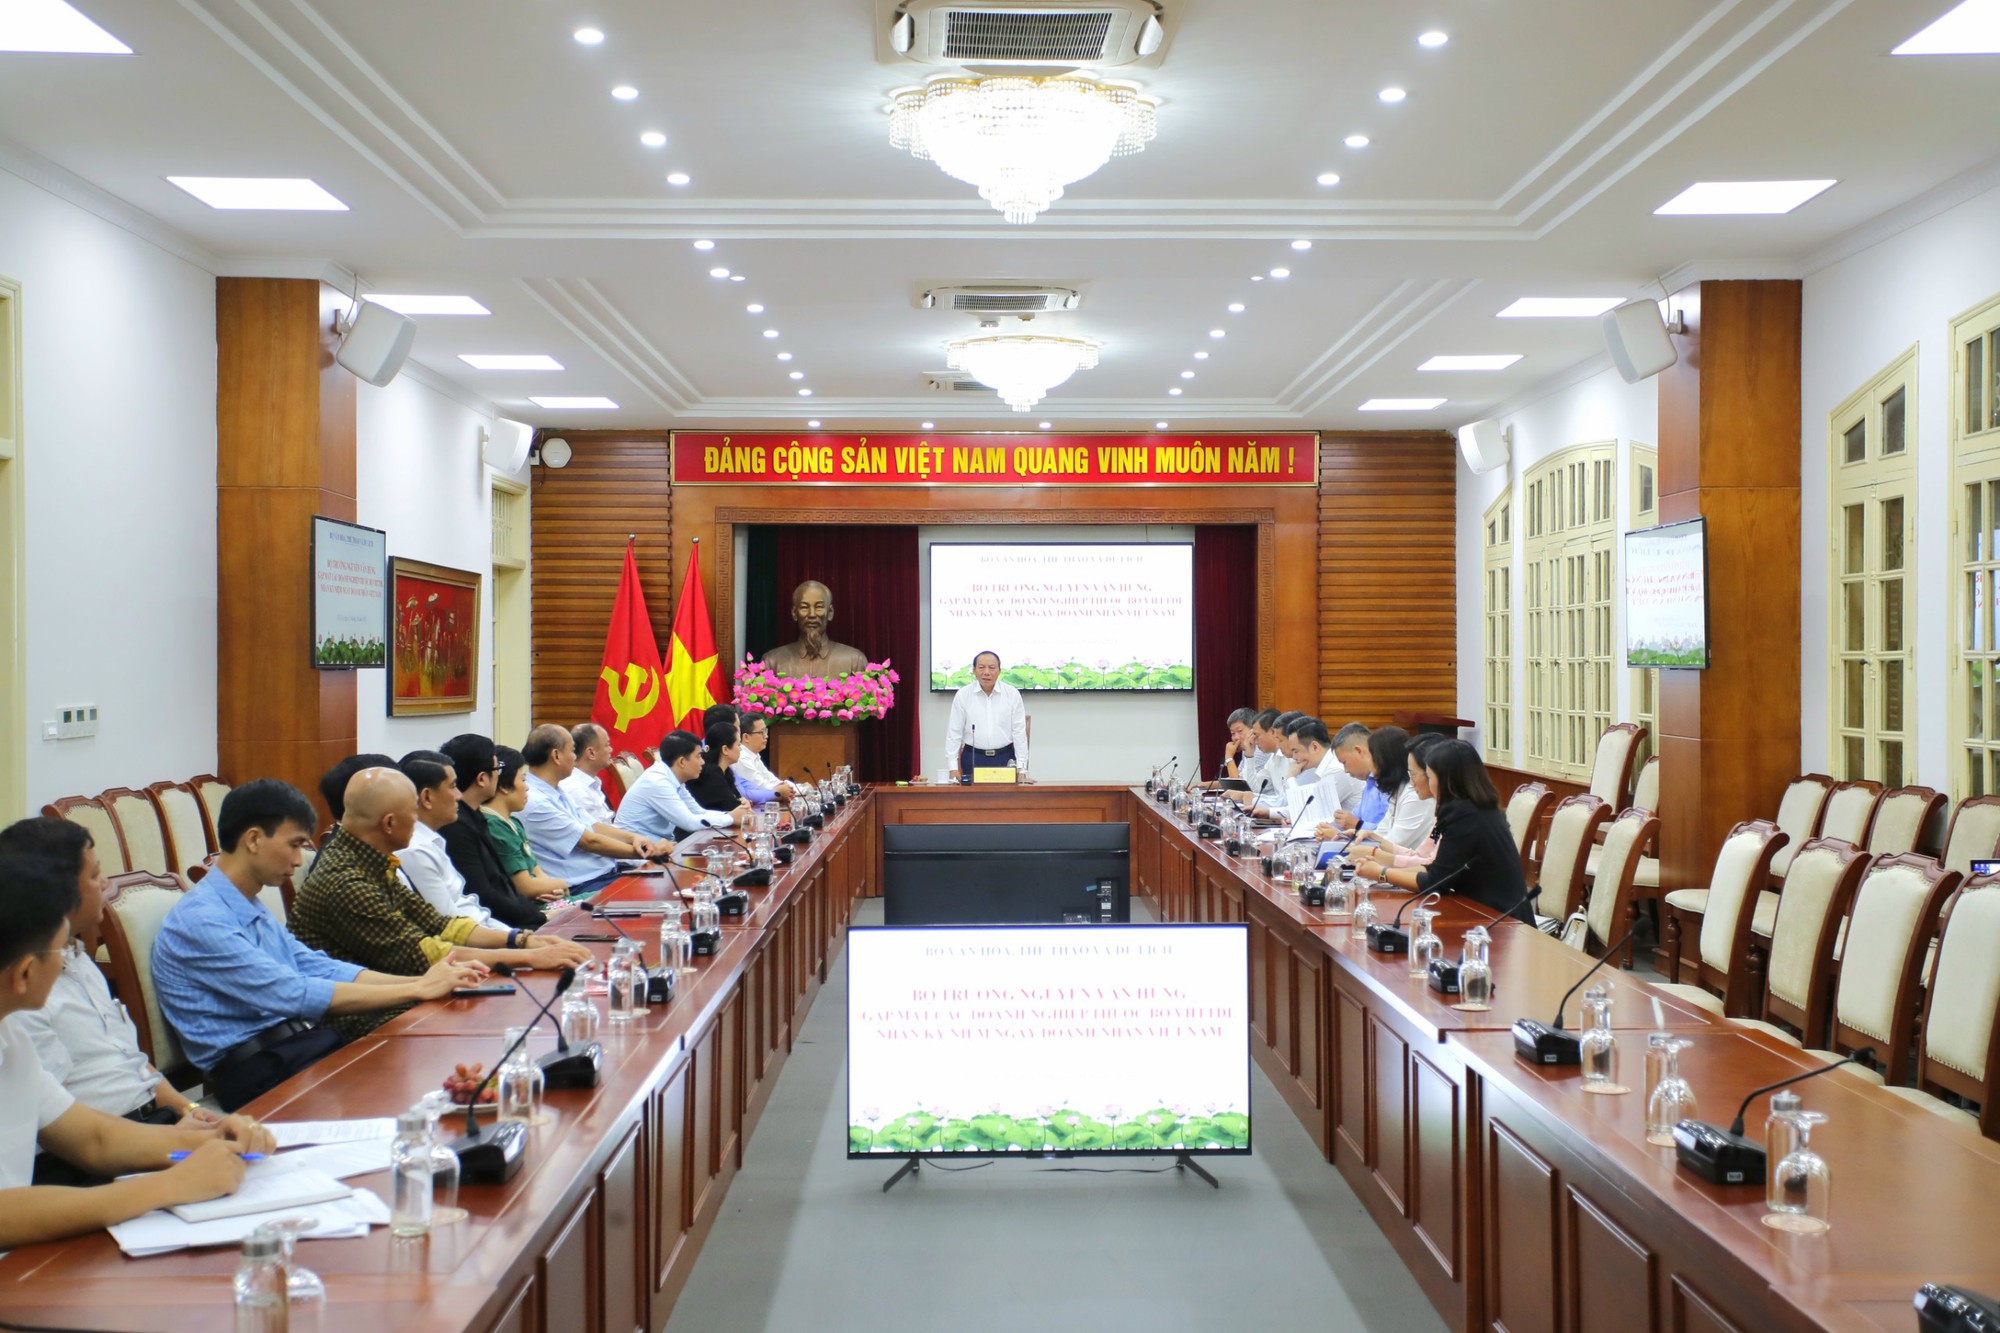 Bộ trưởng Nguyễn Văn Hùng: Doanh nghiệp thuộc Bộ VHTTDL phải có tầm nhìn, tư duy mới để kiến tạo và phát triển - Ảnh 1.